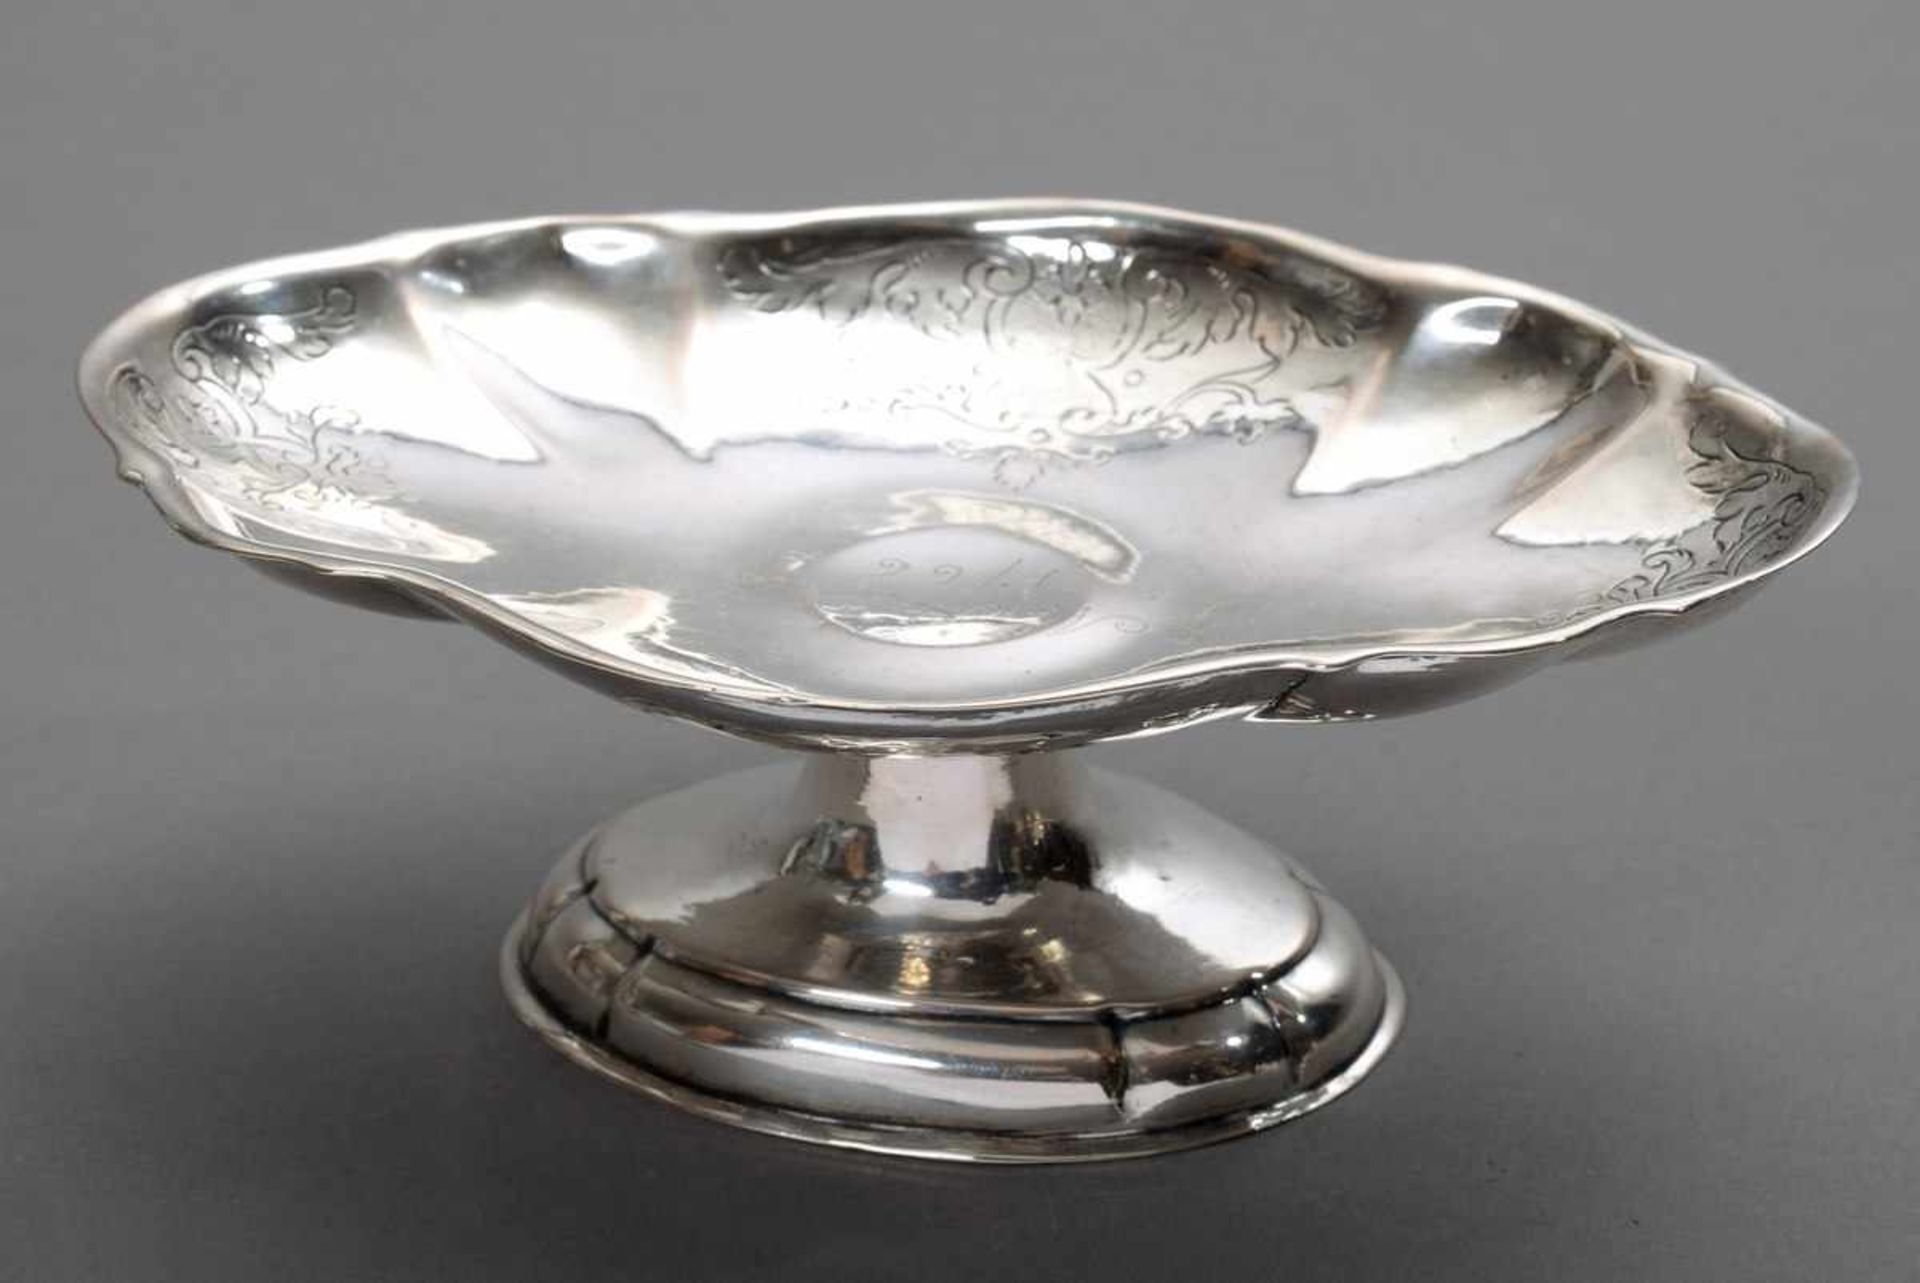 Passige ovale Tazza mit Gravurdekor und barockem punktiertem Dekor "MHD 1766", Silber ungepunzt,